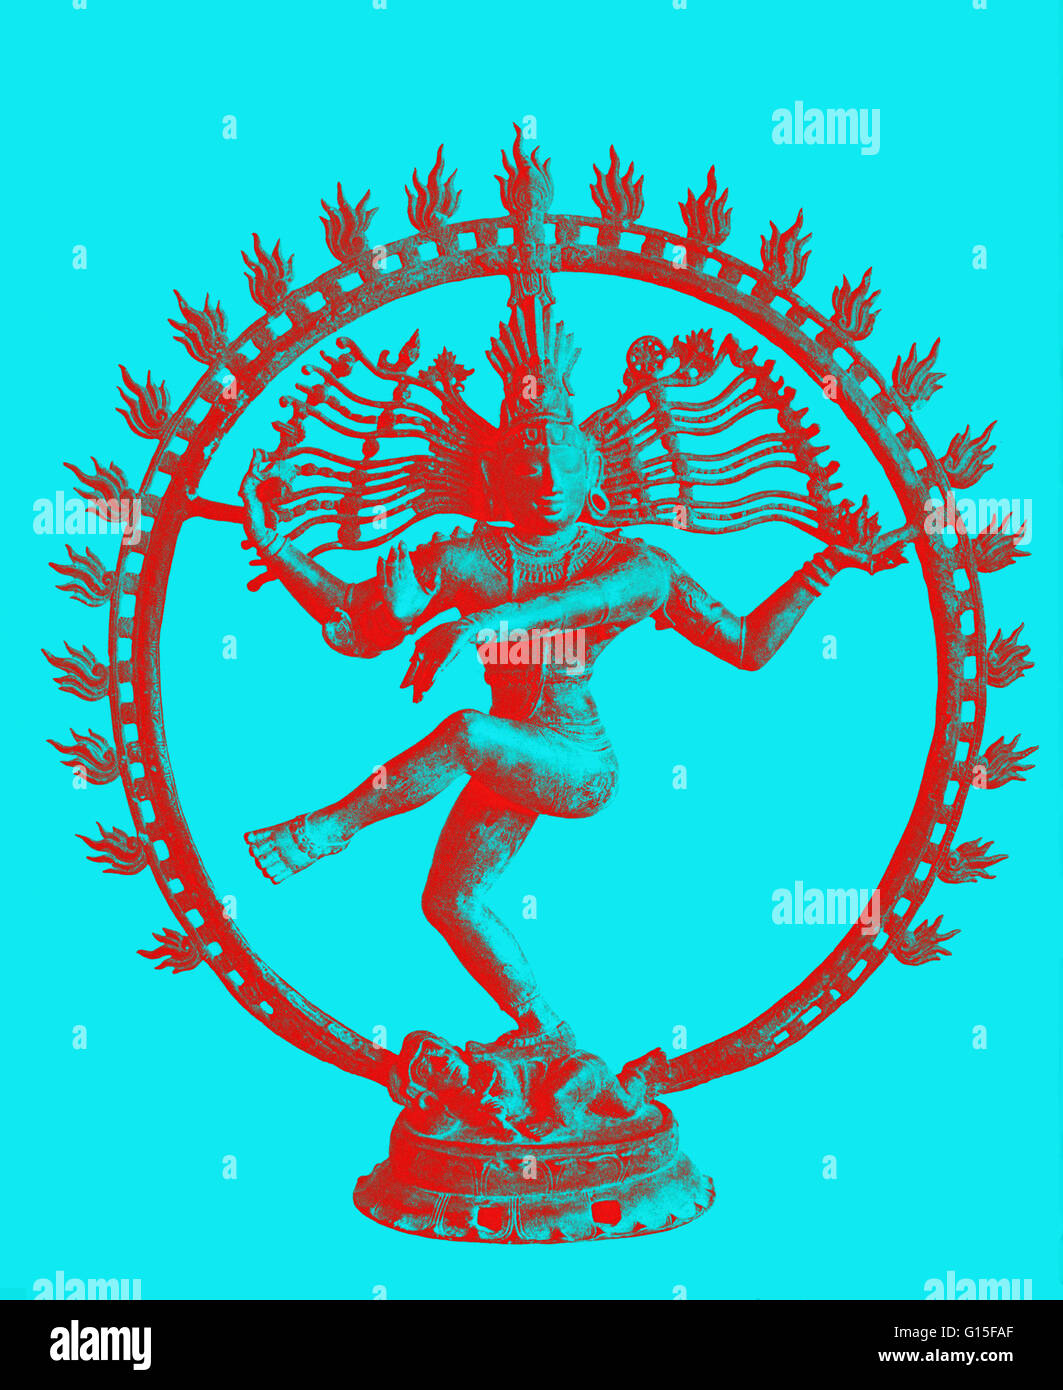 Shiva tanzen im Kreis der Flammen. 11. Jh. Bronze. Shiva ist der dritte im Bunde der hinduistischen Trimurti. Er fungiert als Zerstörer oder Transformator des Universums. Stockfoto